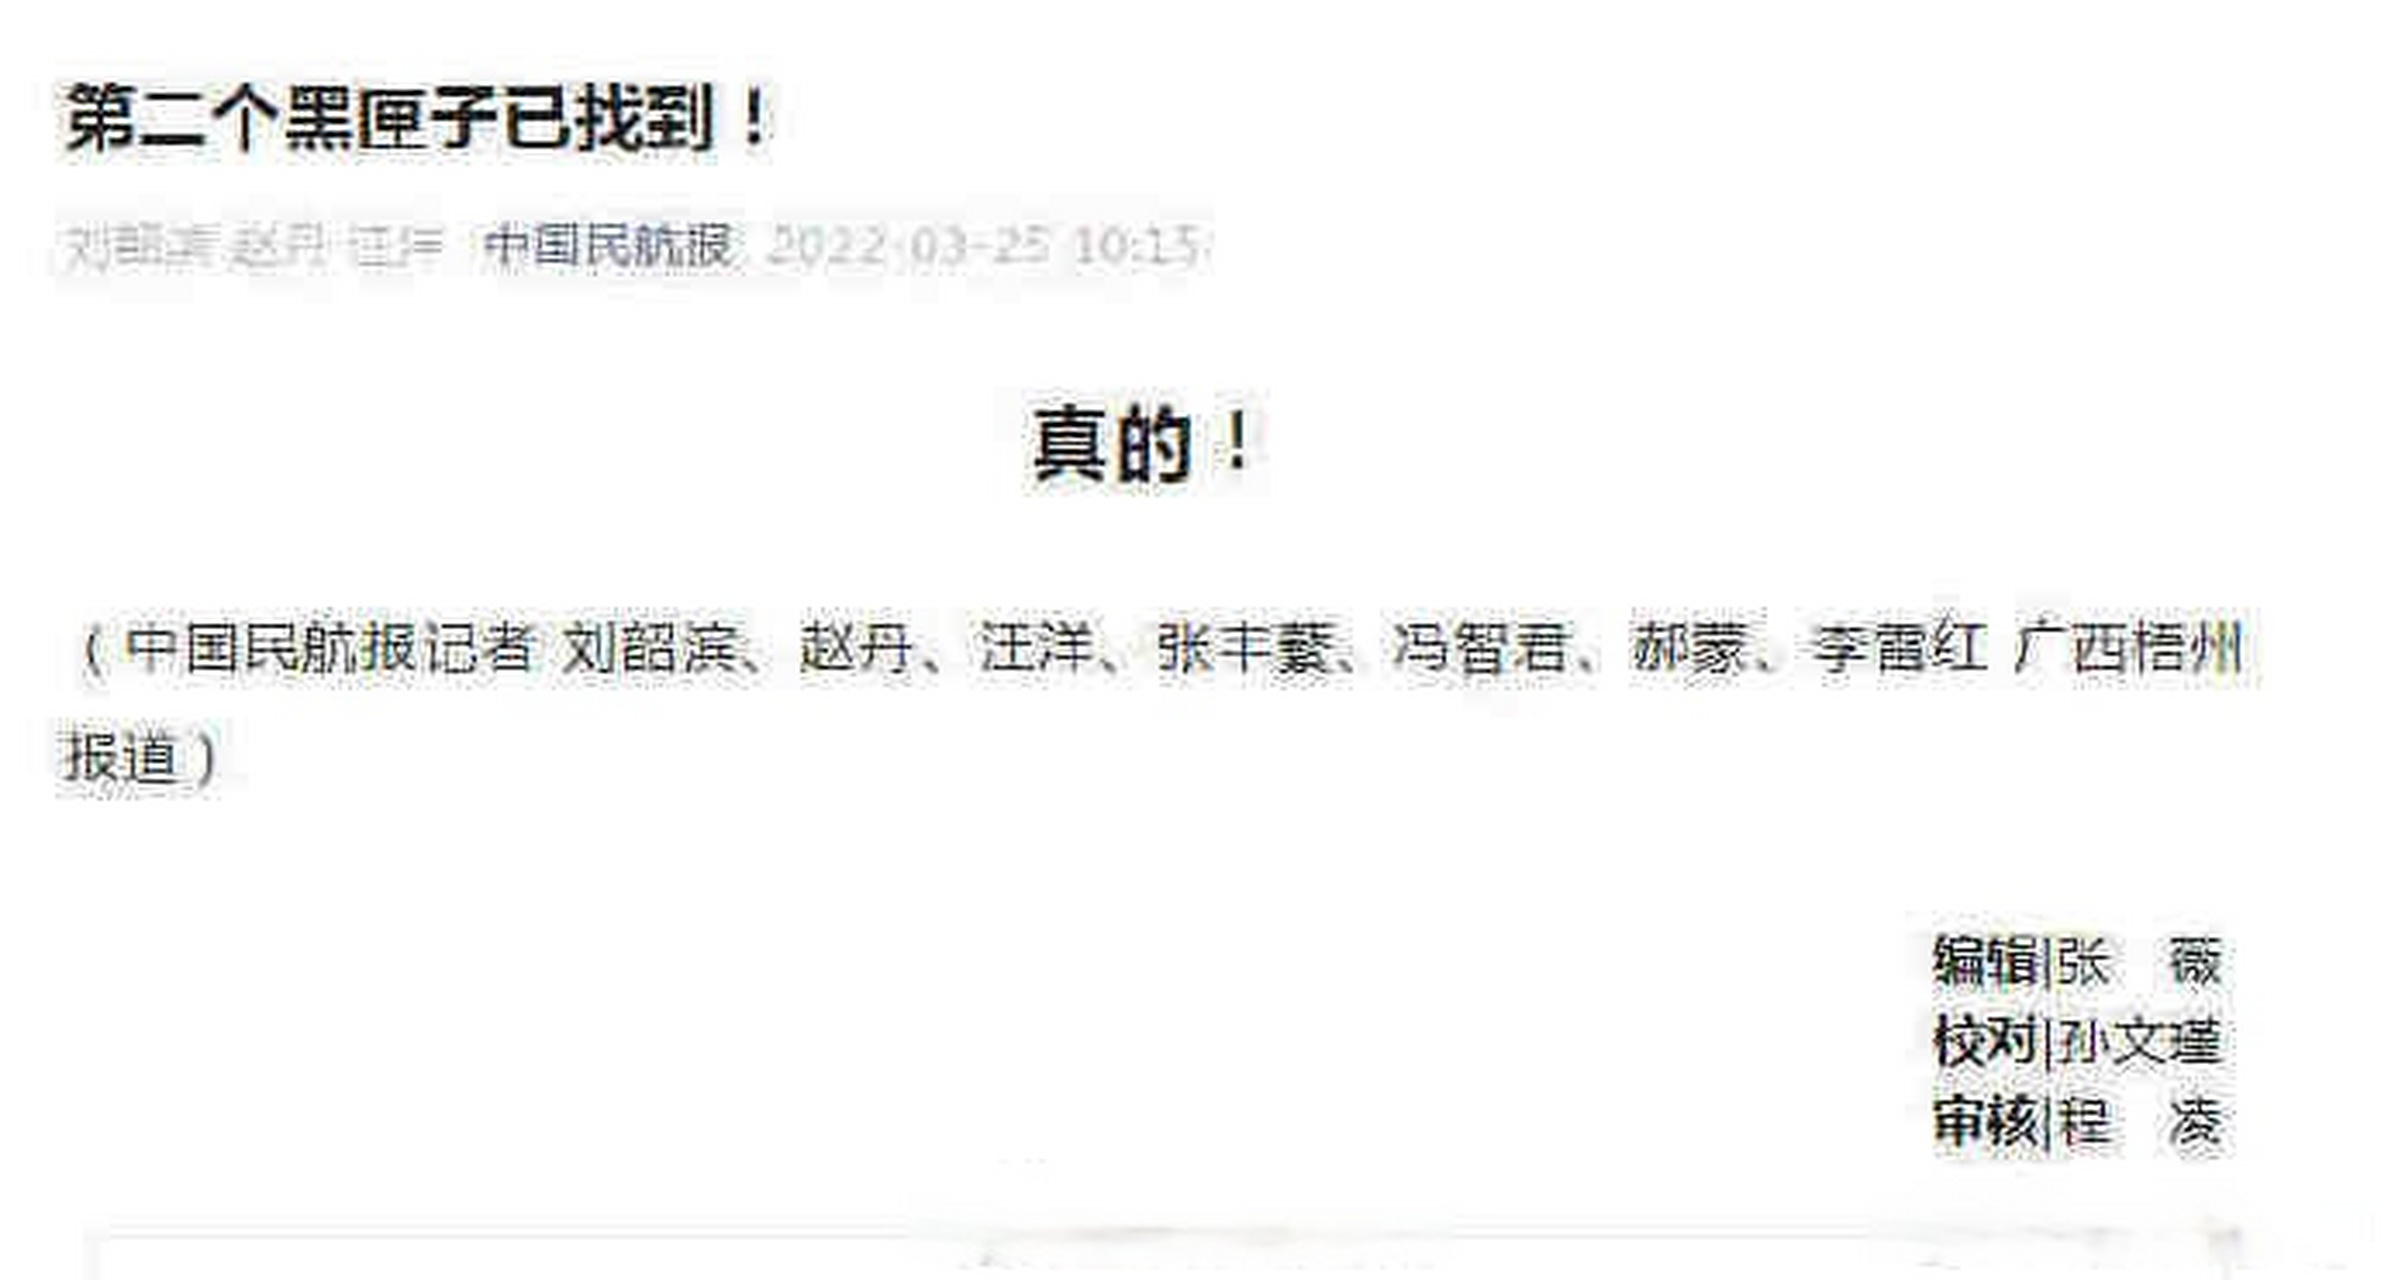 此前,东航mu5735航班的一部黑匣子于23日被发现  (中国民航报)